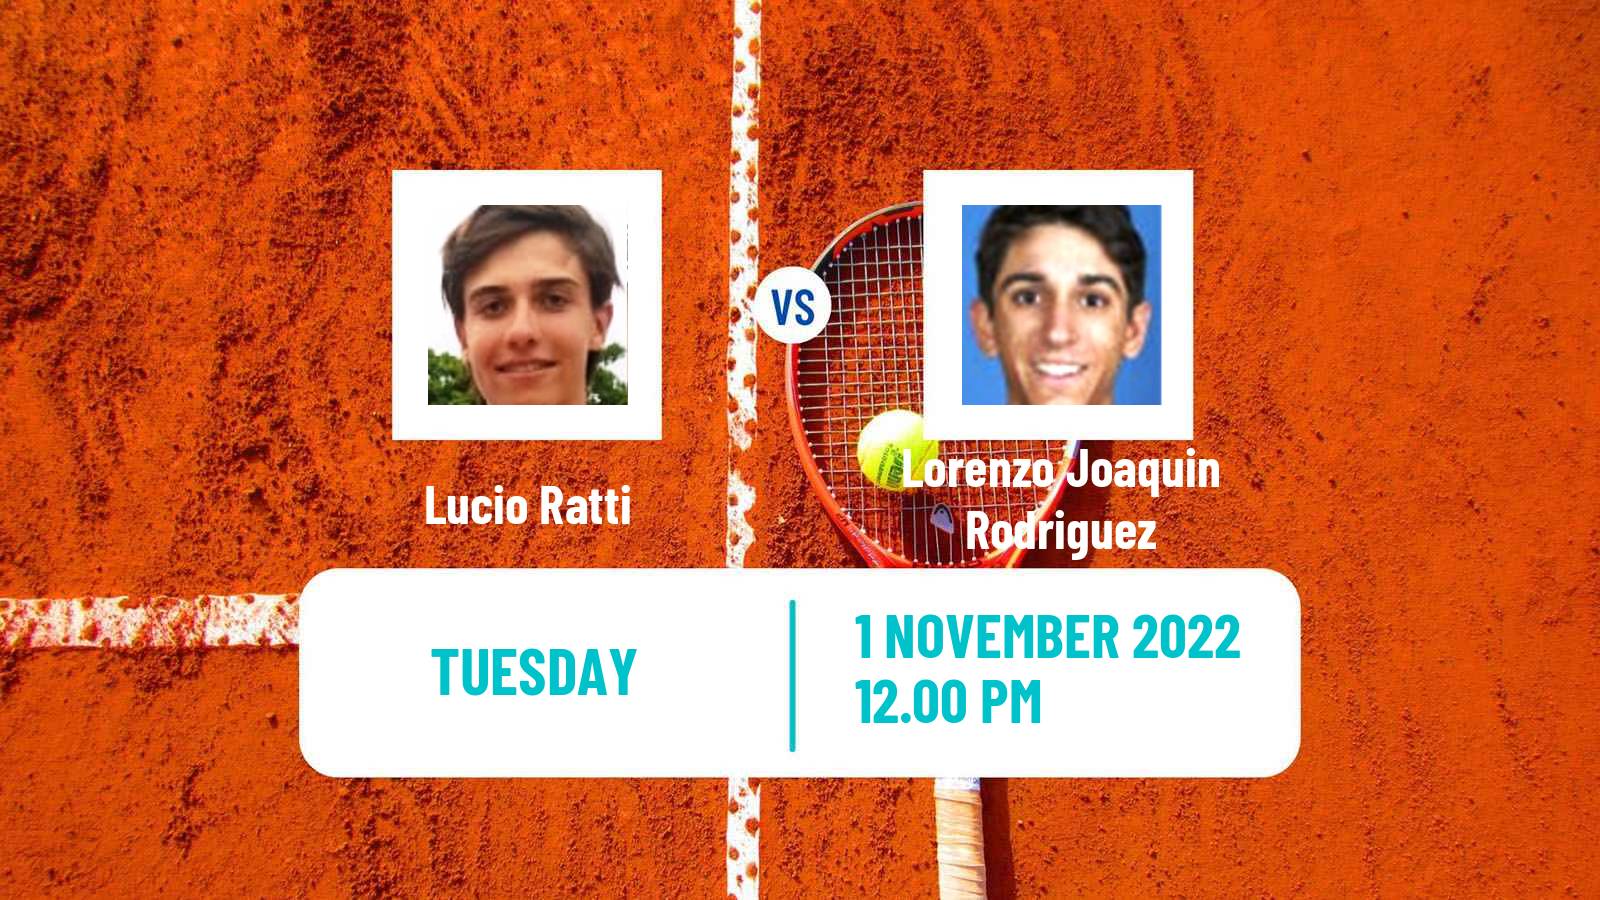 Tennis ITF Tournaments Lucio Ratti - Lorenzo Joaquin Rodriguez